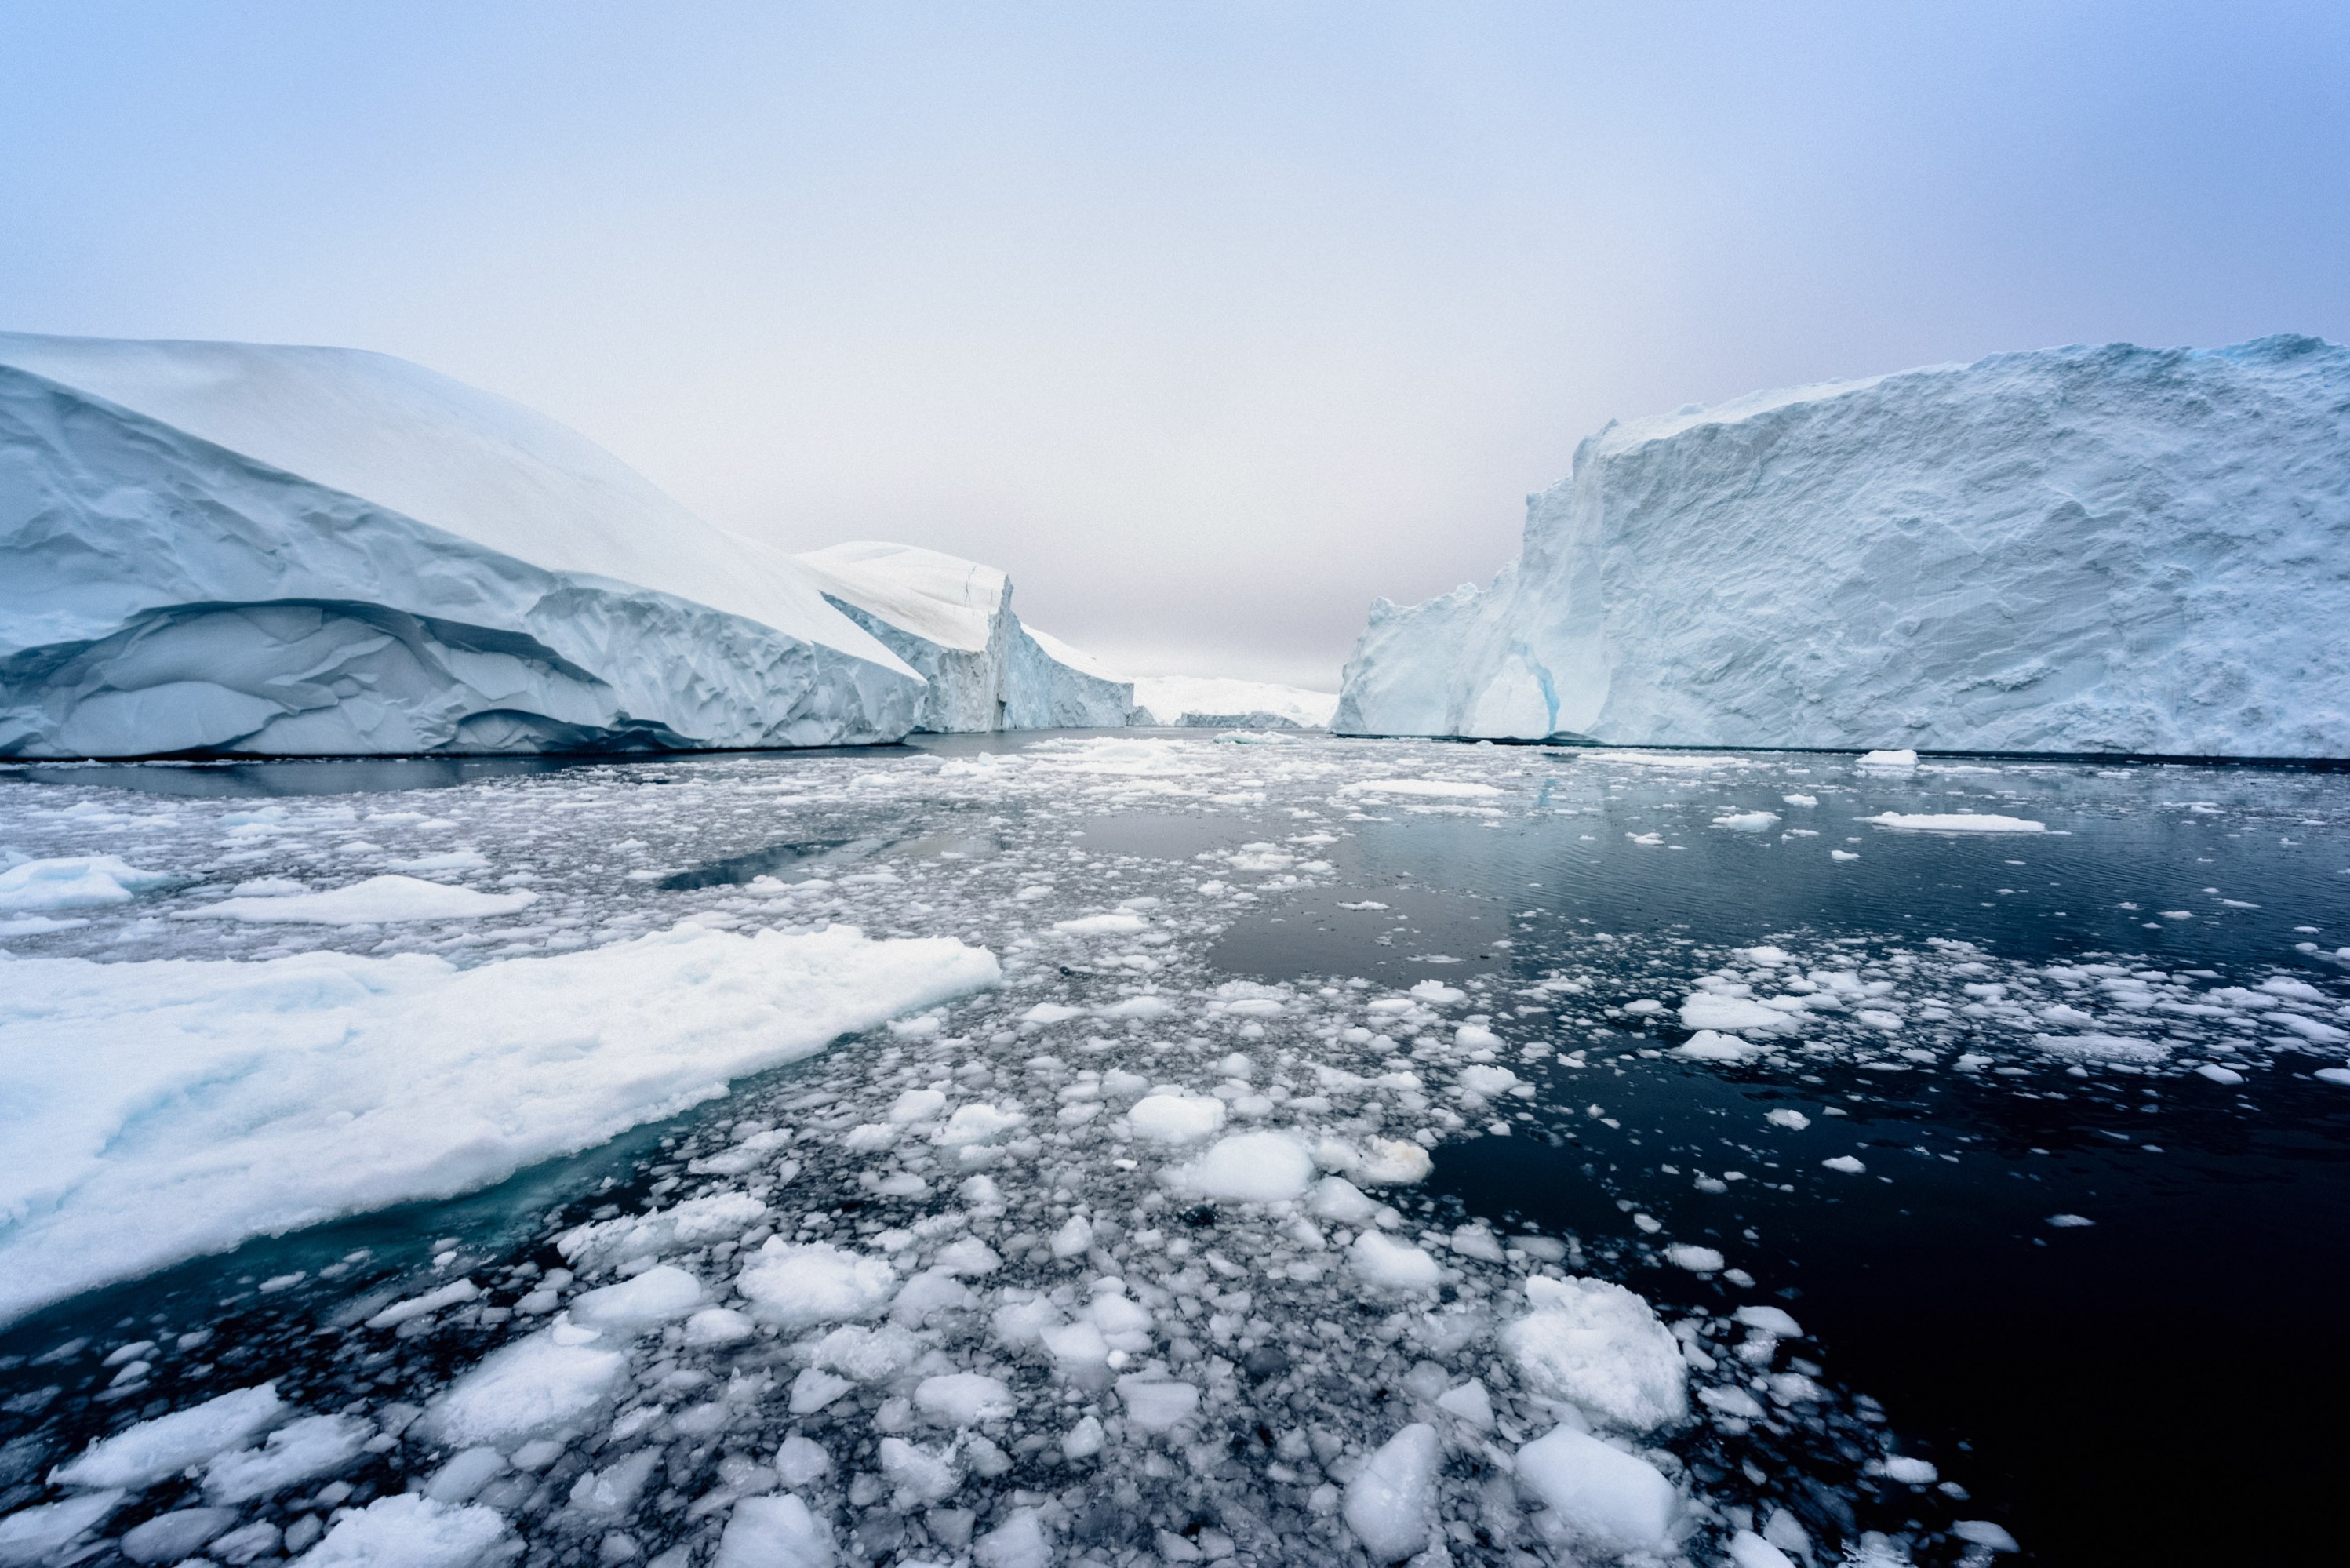 Arctic icebergs in the sea near Greenland